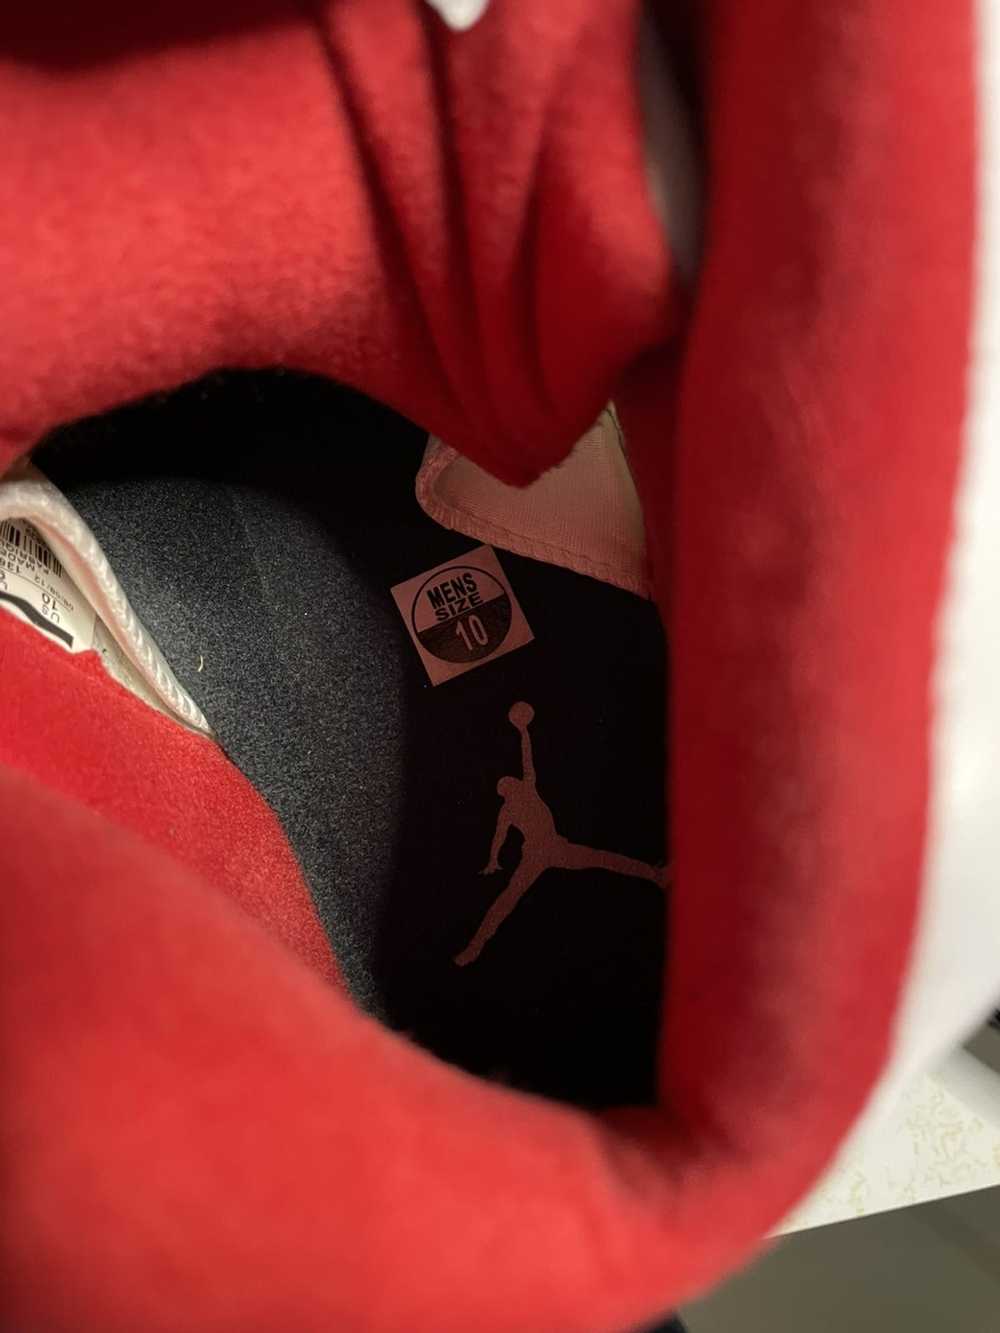 Jordan Brand Jordan Retro 5 “Fire Red” - image 5